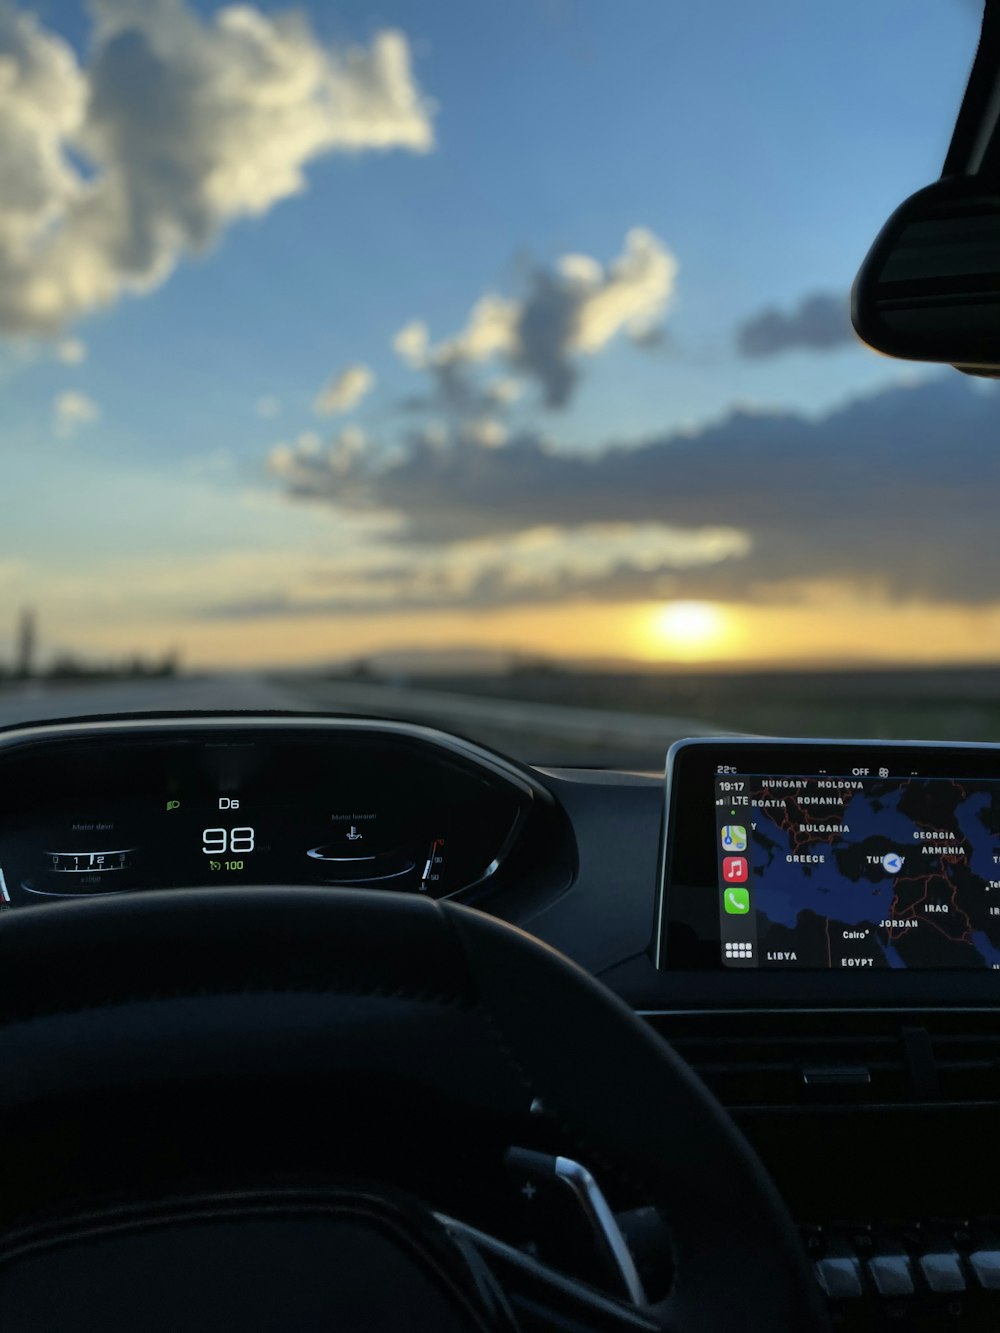 black car dashboard with digital device